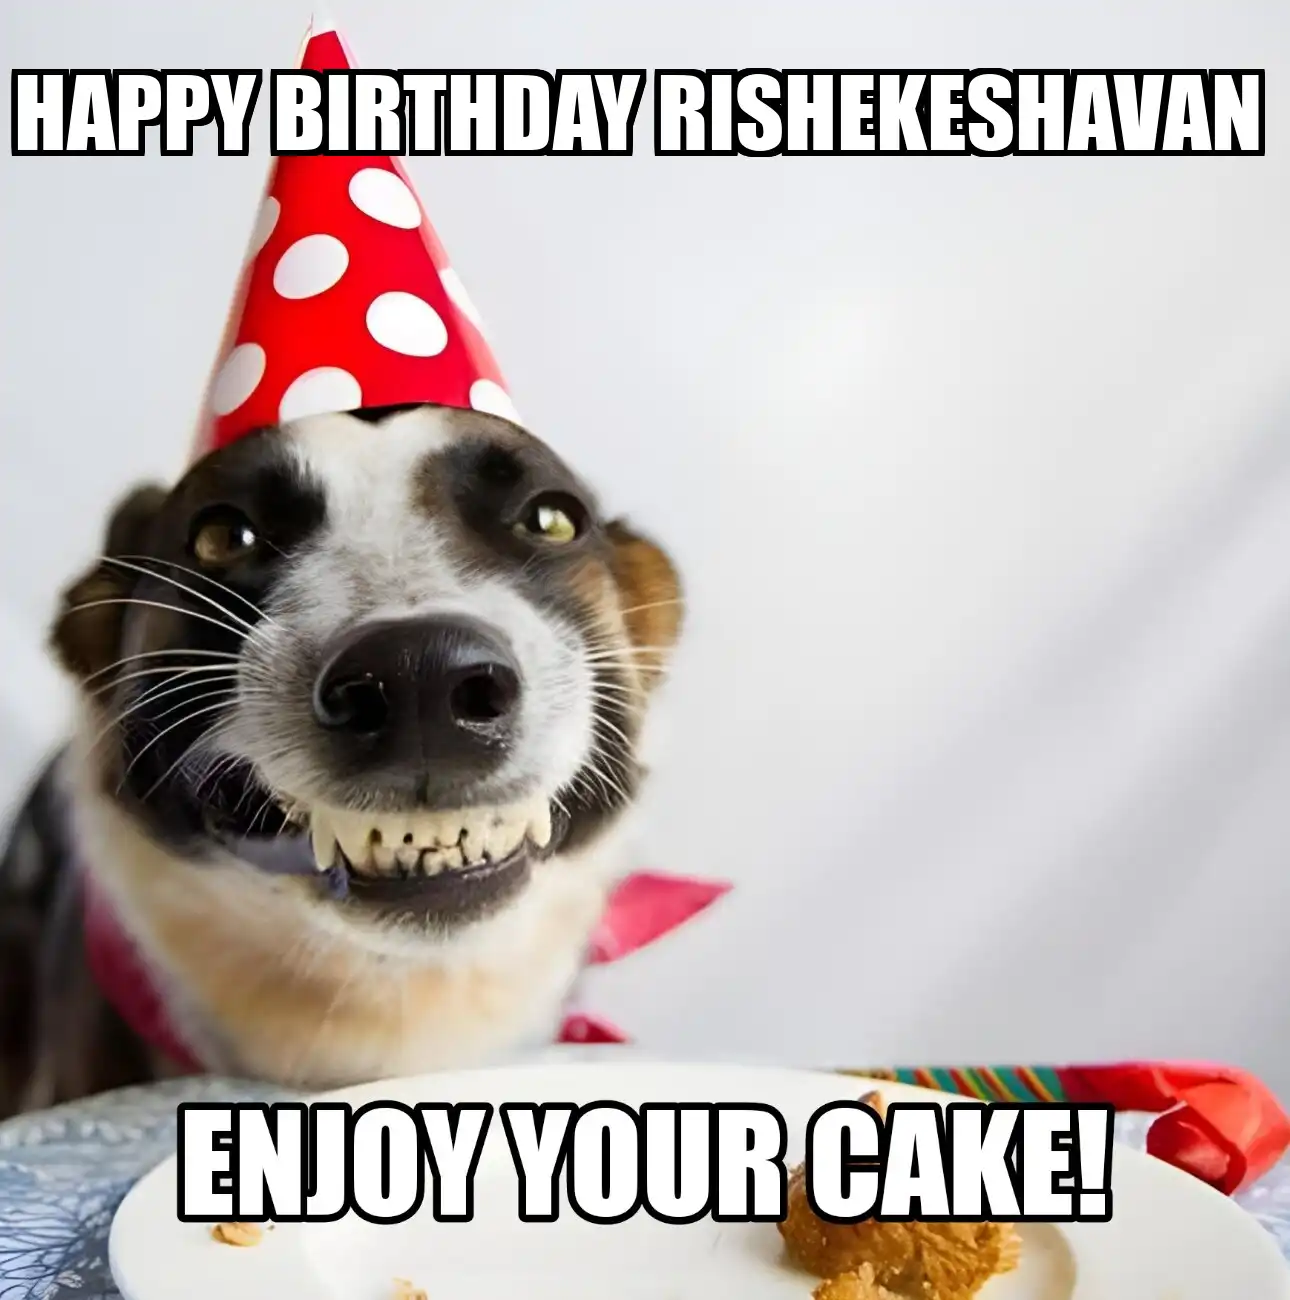 Happy Birthday Rishekeshavan Enjoy Your Cake Dog Meme